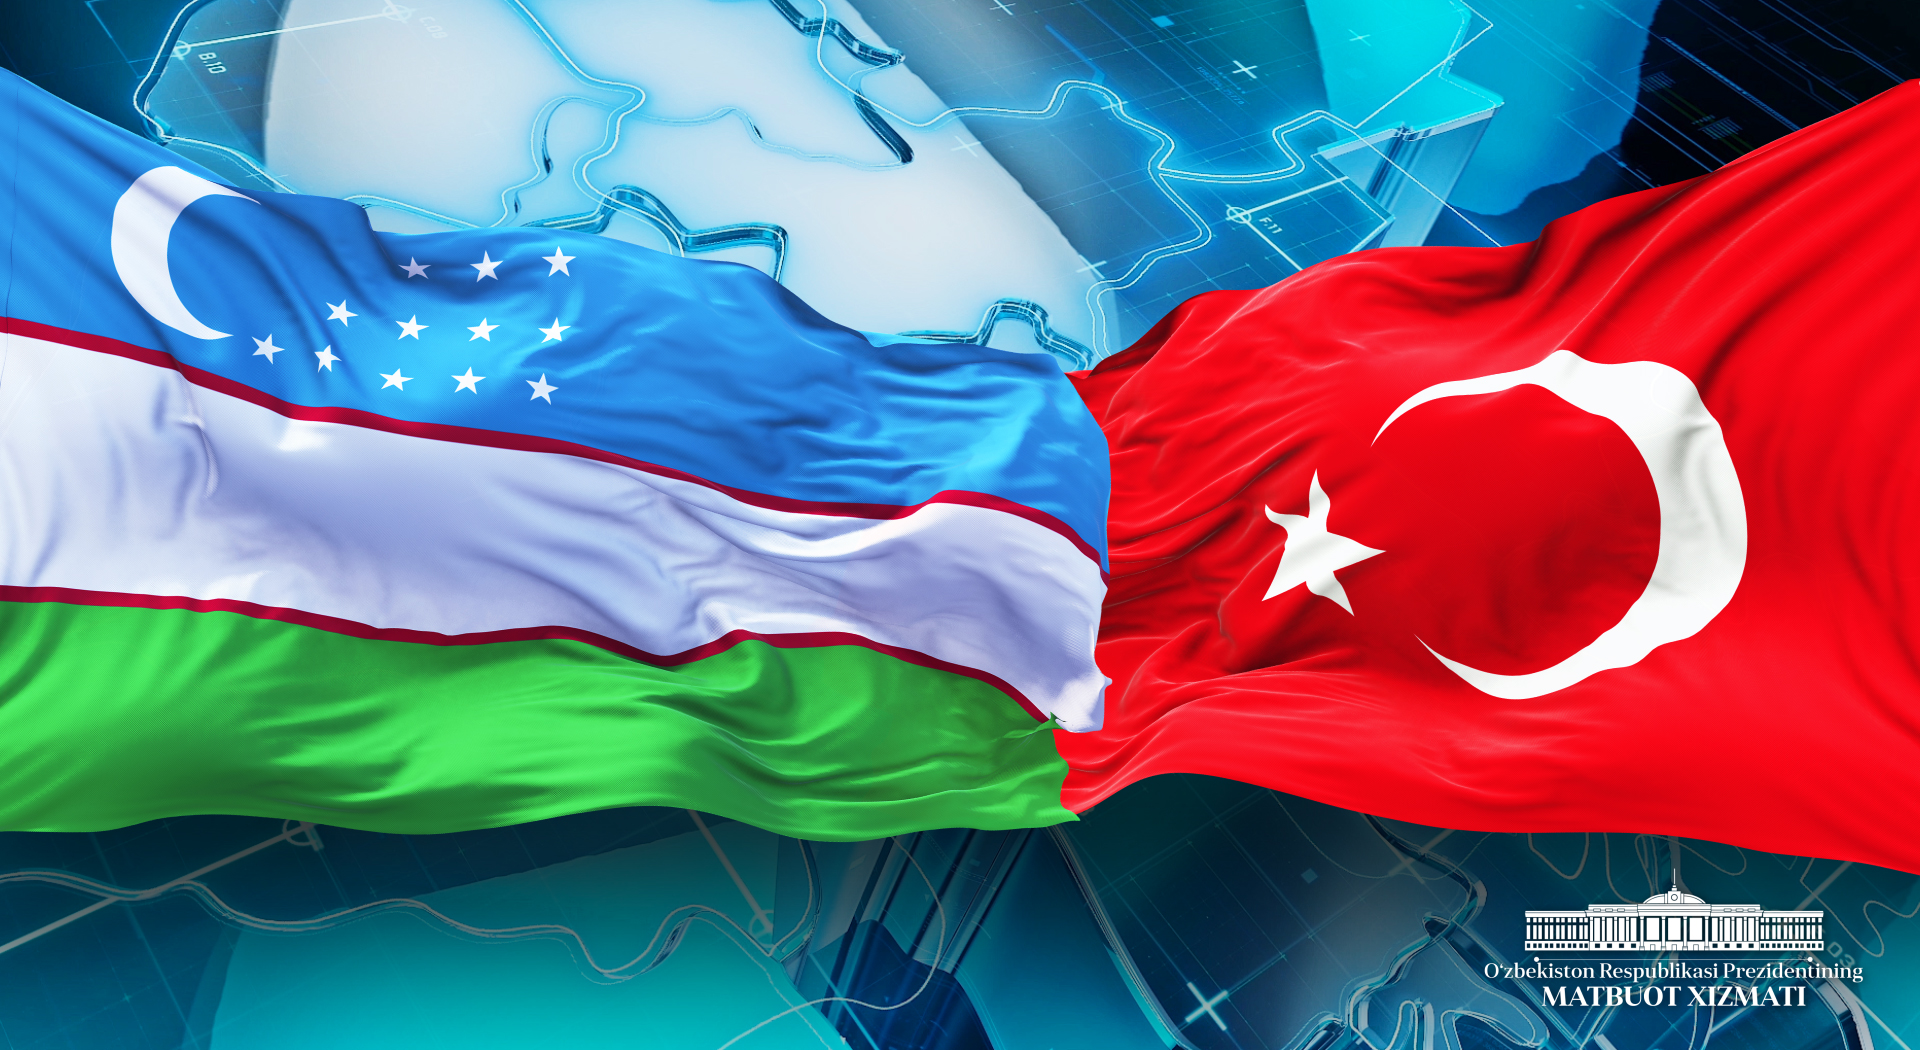 Key officials discuss strategies for fostering economic ties between Uzbekistan and Turkey